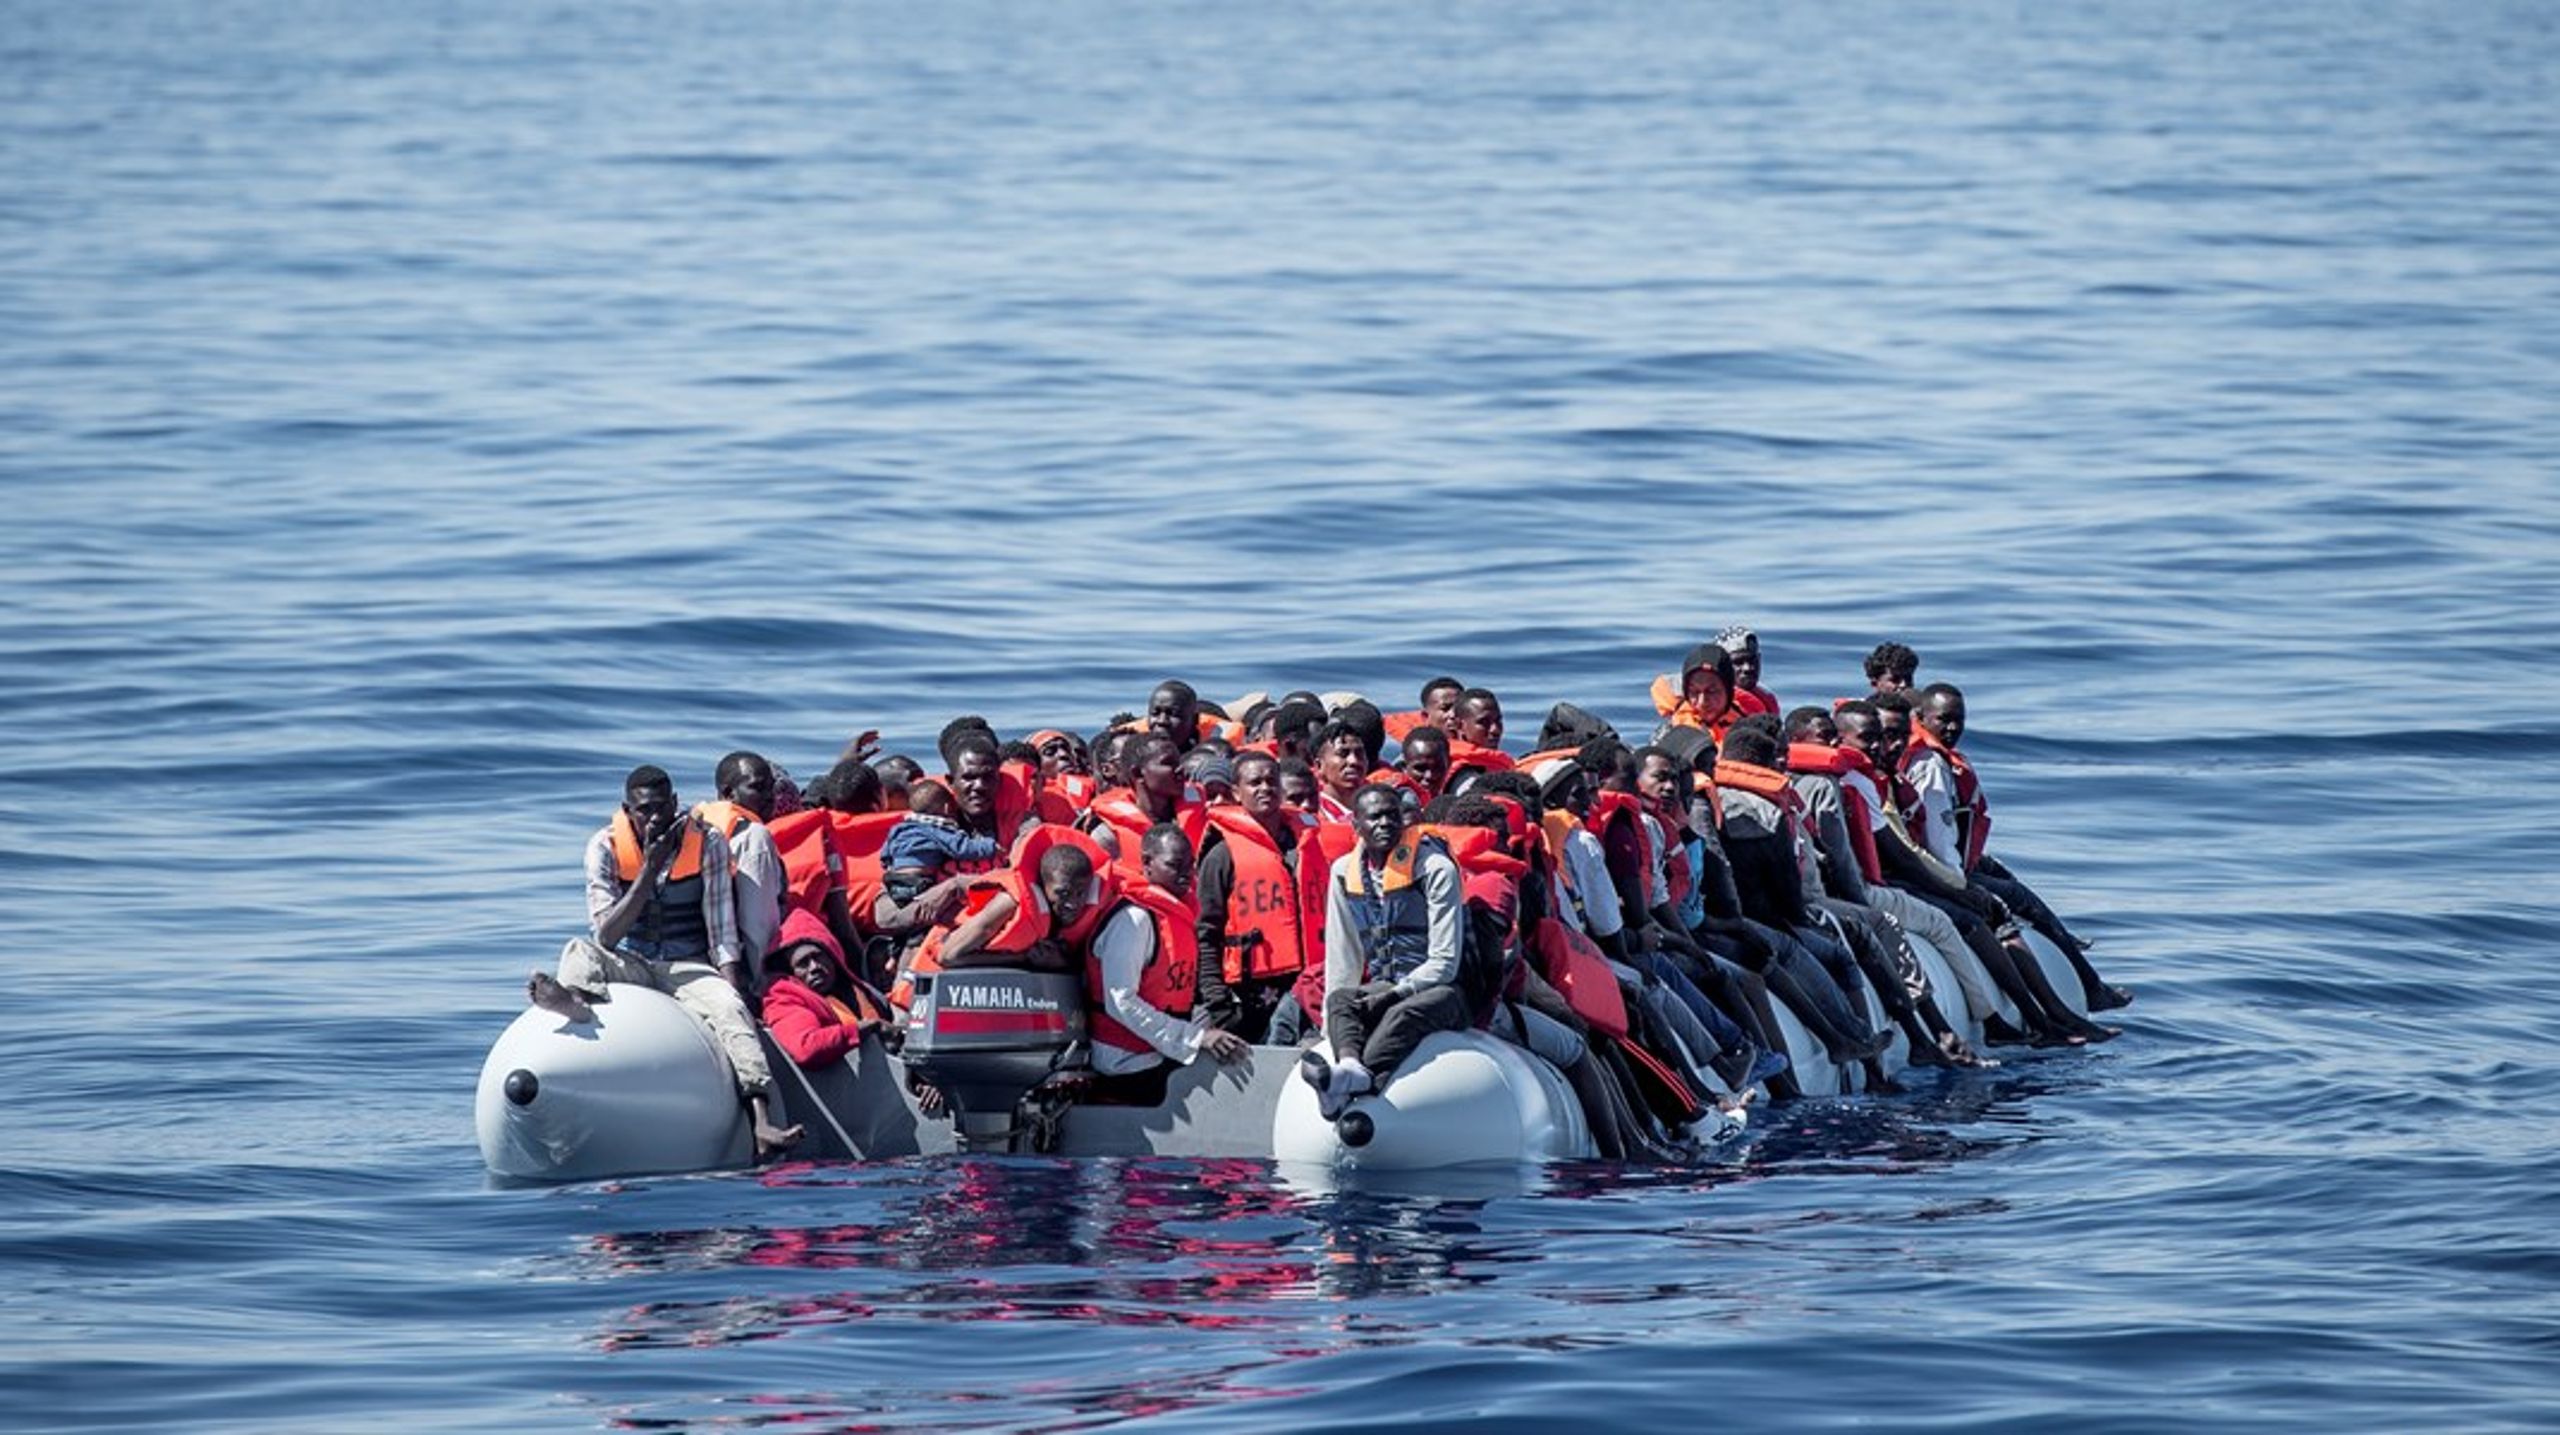 I sidste uge mistede 43 migranter, heraf tre spædbørn, livet i en tragisk drukneulykke ud for Marokko. Det er inhumant og uretfærdigt, skriver Rasmus Stoklund (S).